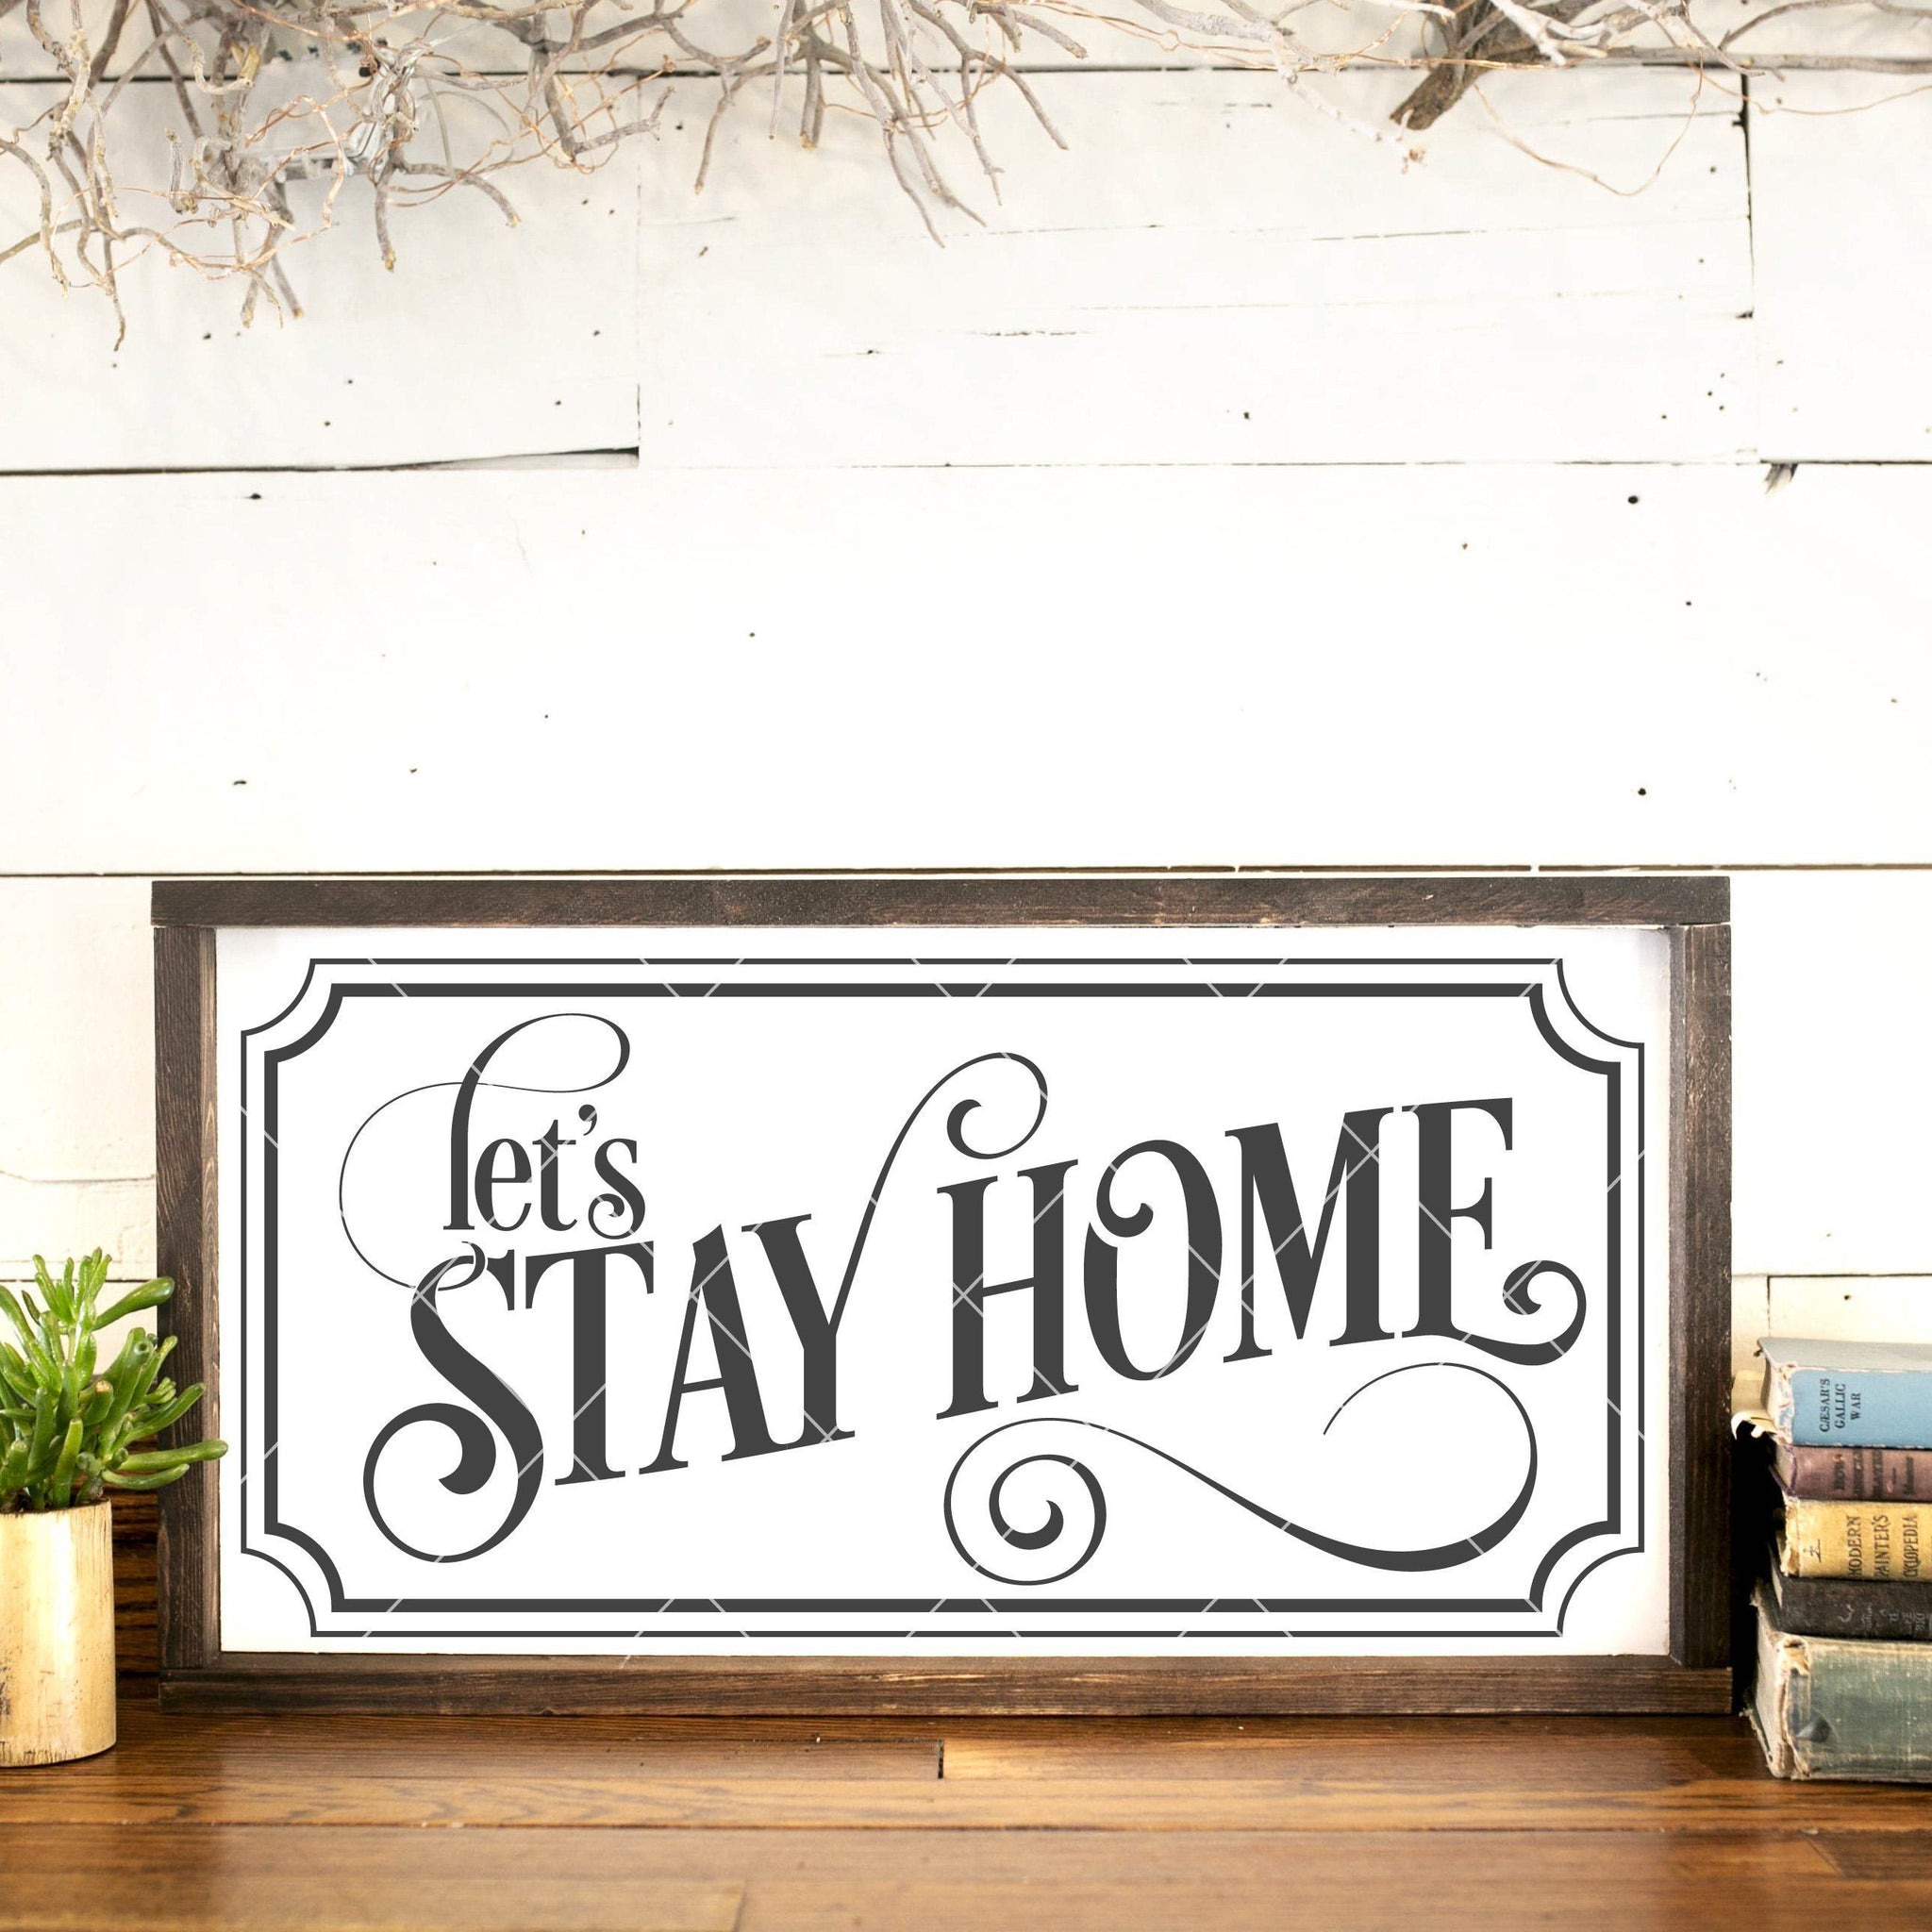 Download Let's Stay Home SVG File - Board & Batten Design Co.